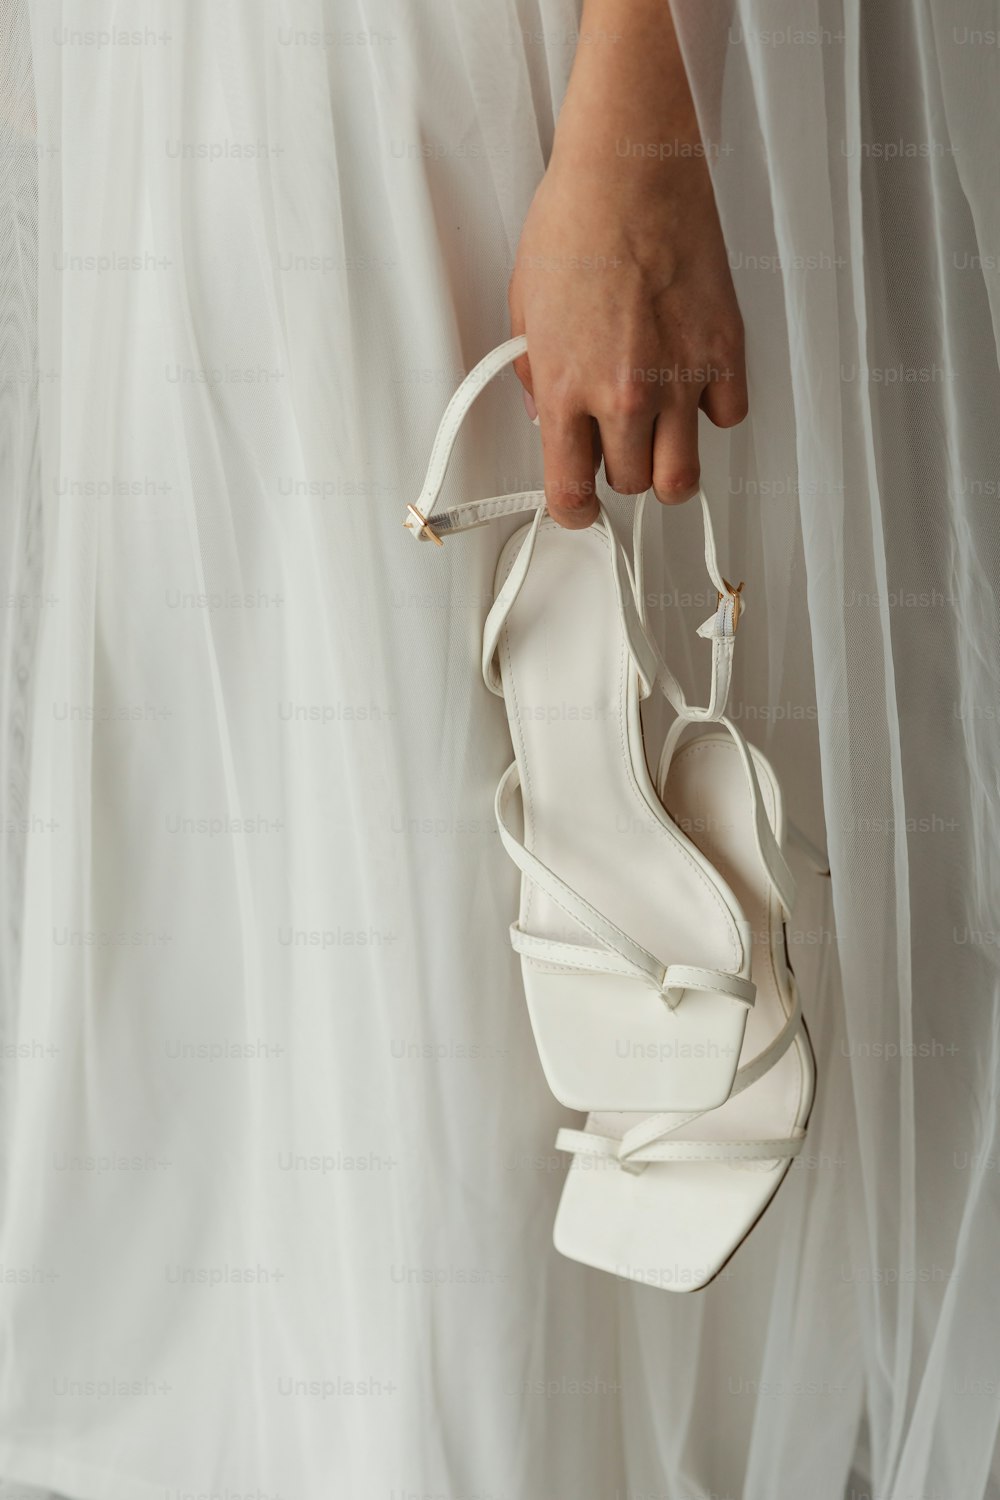 Eine Frau in einem weißen Kleid hält einen weißen Schuh